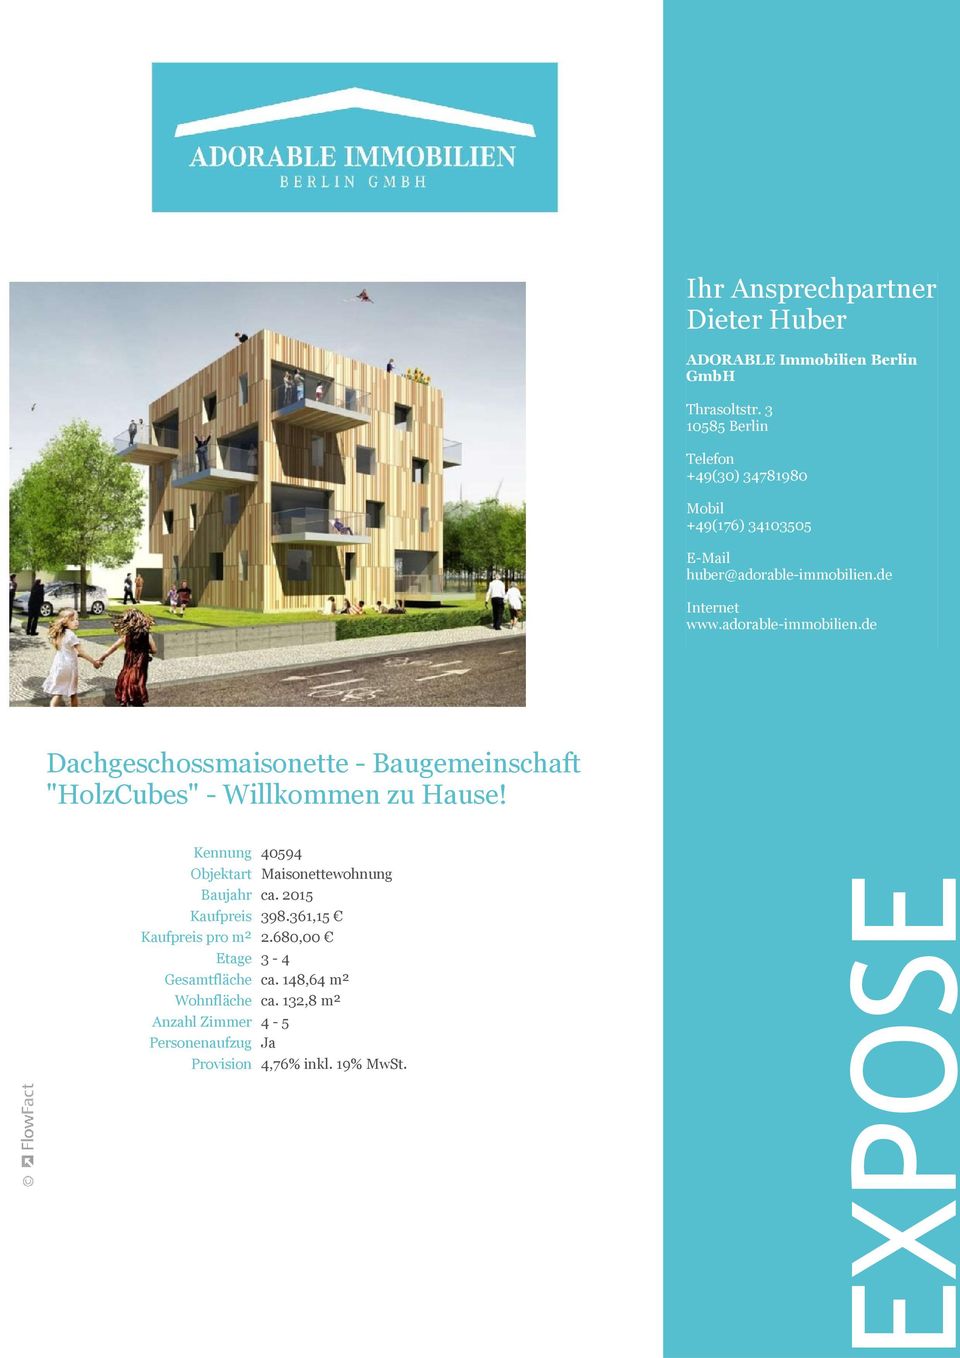 adorable-immobilien.de Dachgeschossmaisonette - Baugemeinschaft "HolzCubes" - Willkommen zu Hause!